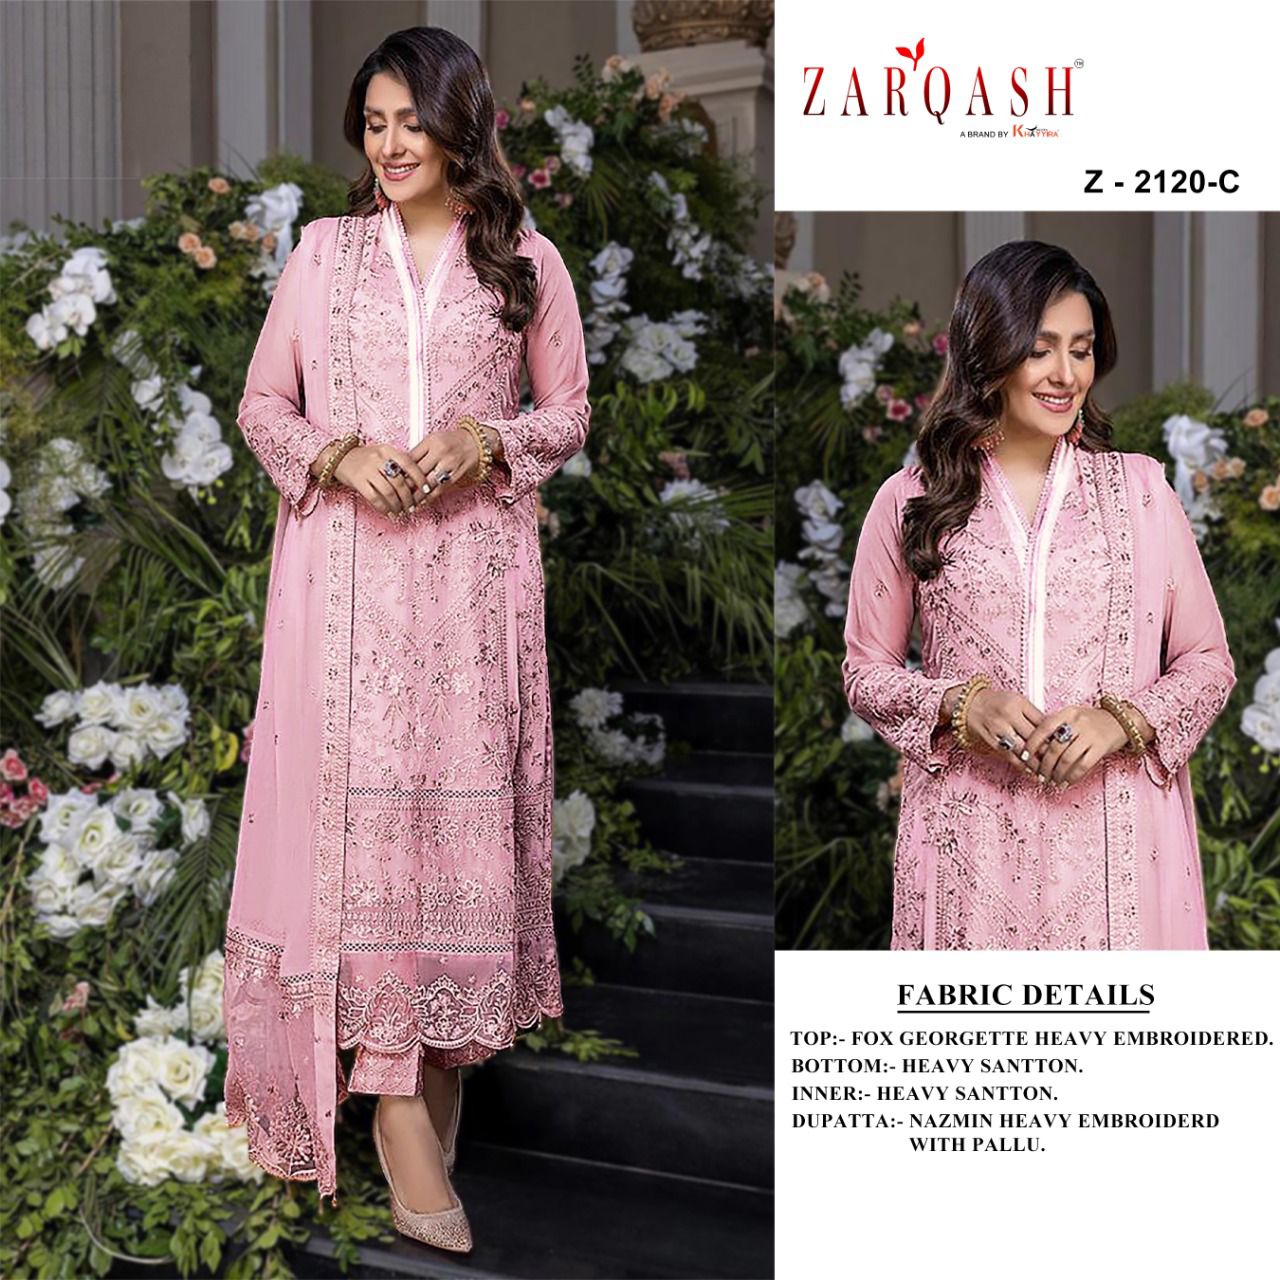 Zarqash Sara Z-2120-C